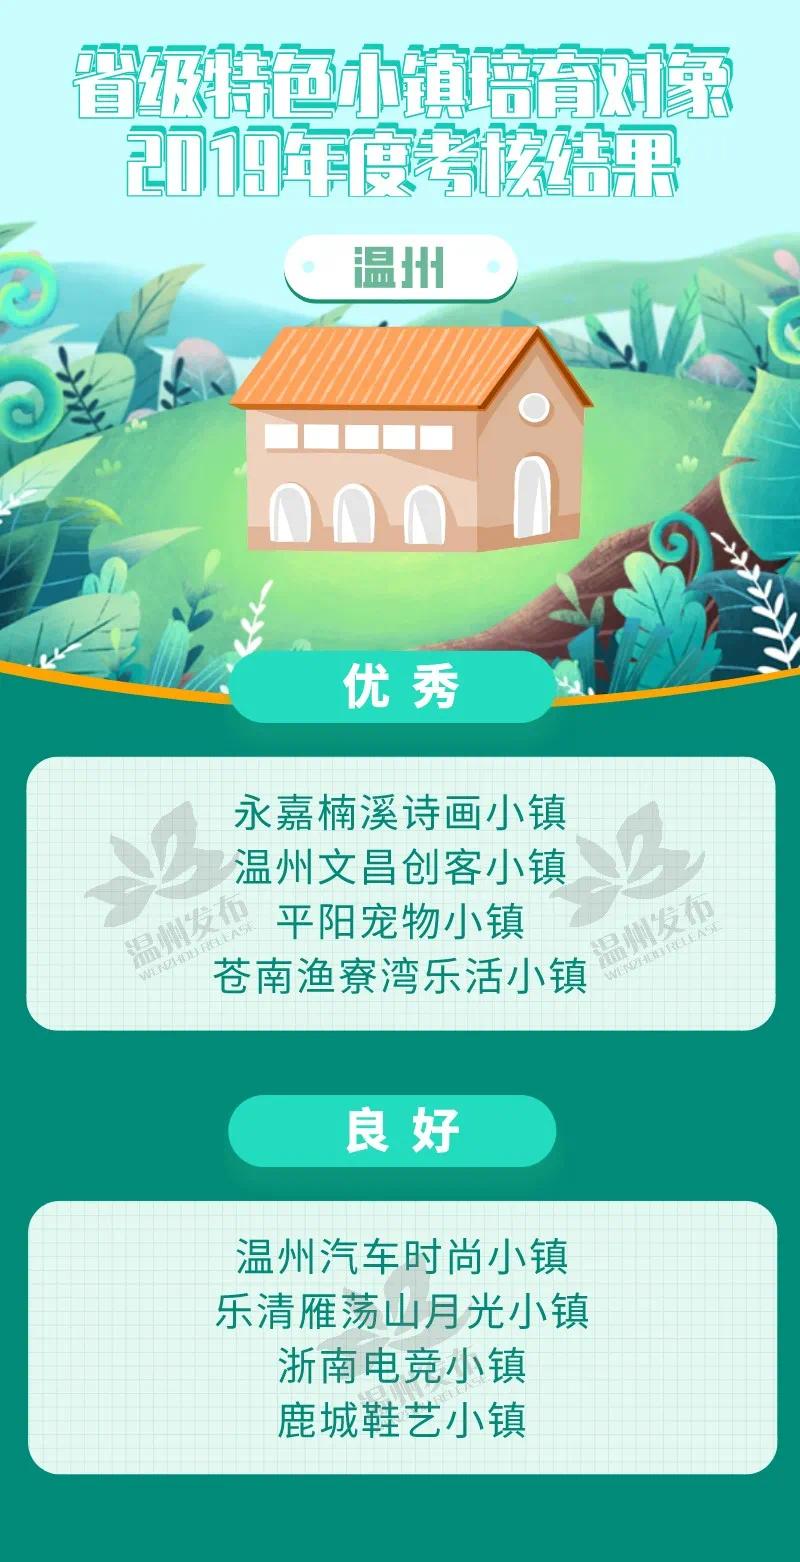 2019浙江省特色小镇考核 温州7个获优秀 位列全省第一